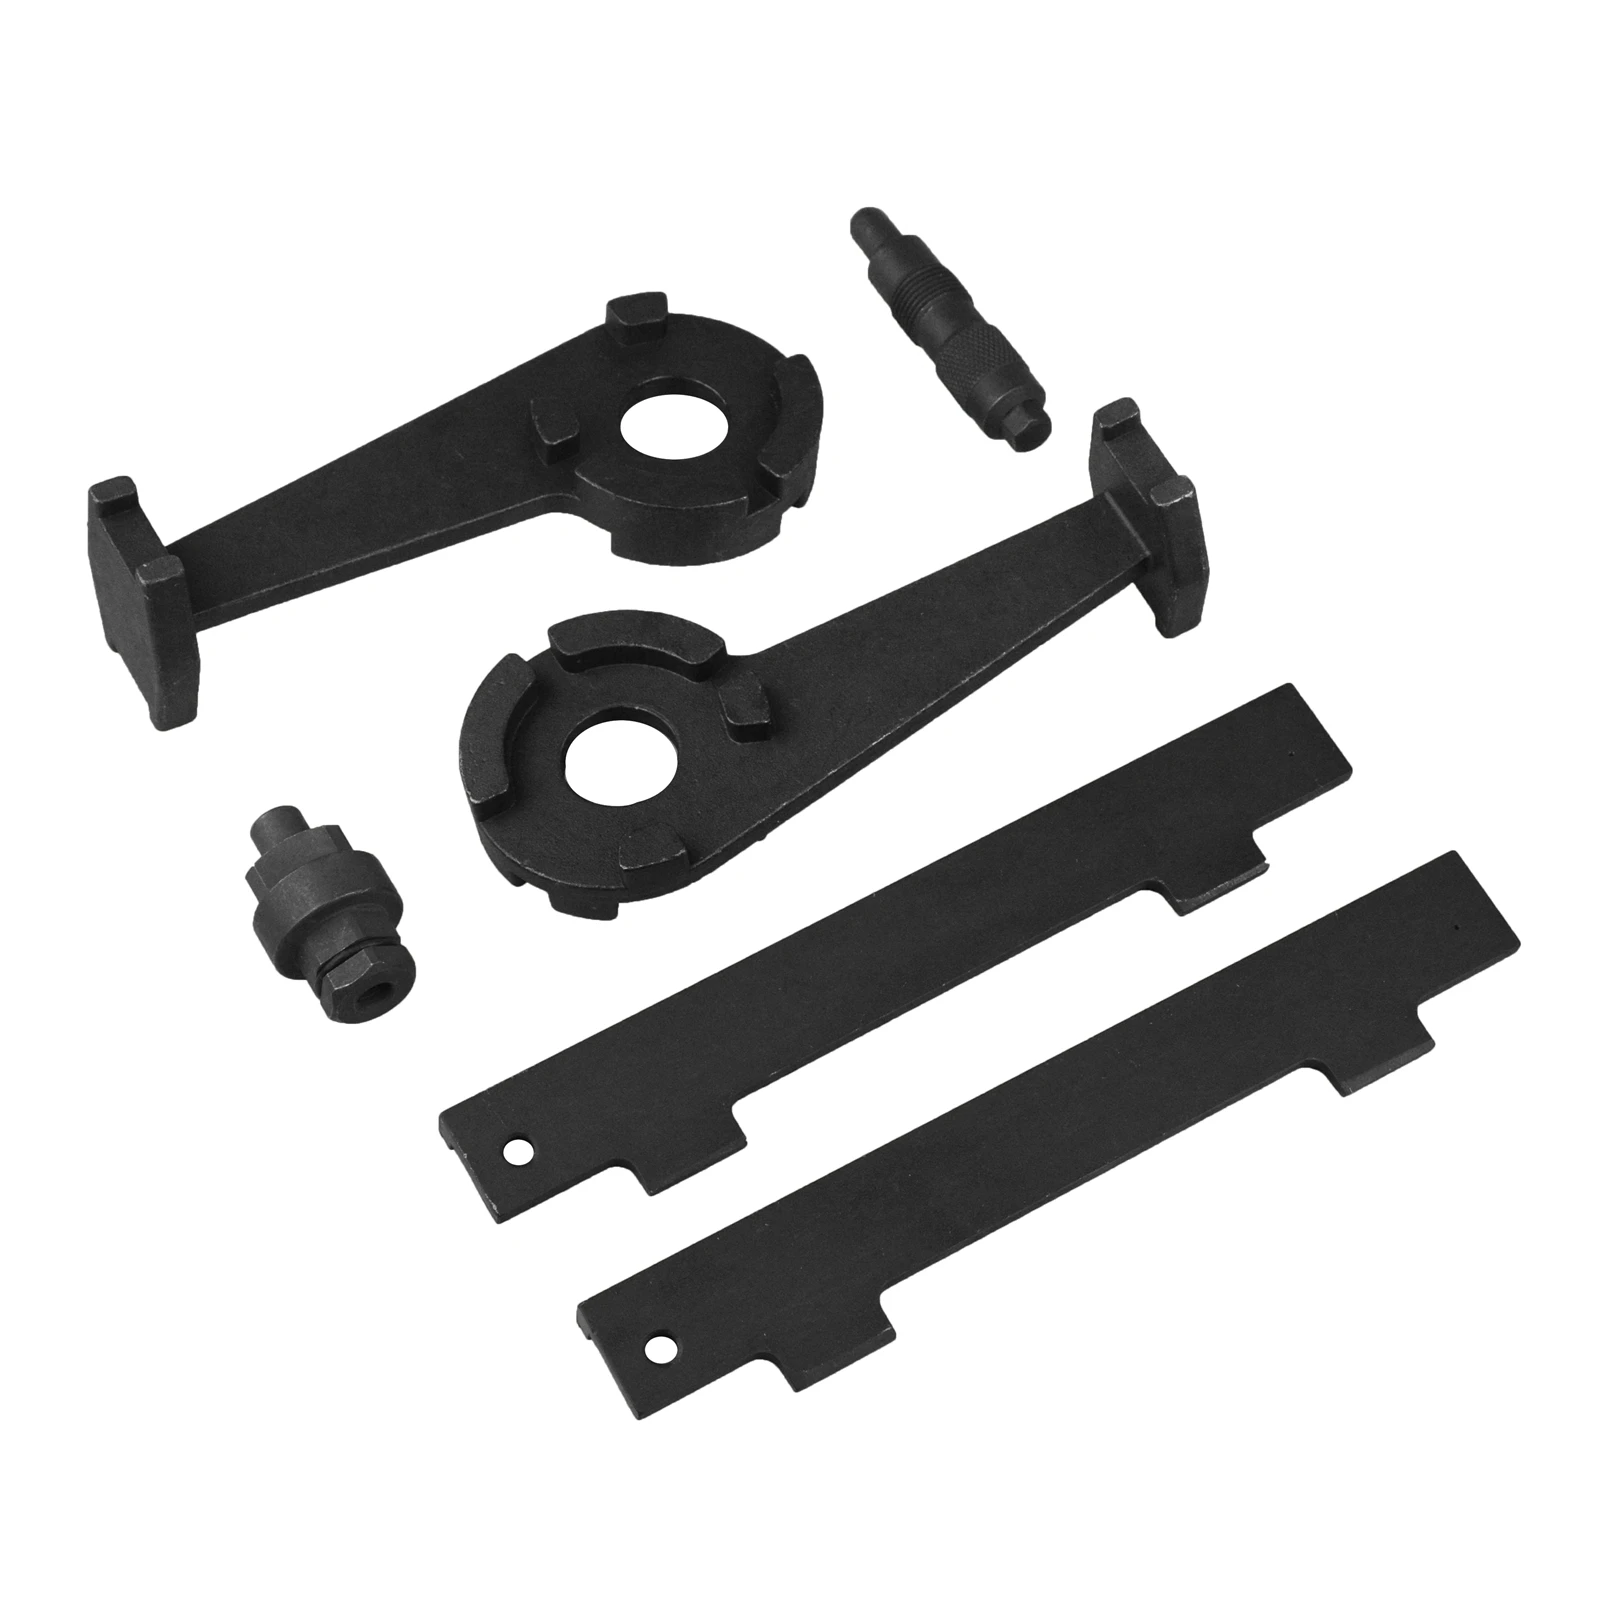 

Car Engine Camshaft Crankshaft Alignment Tool Kit For VW AUDI A6 A8 4.2L V8 40V T40047 T40046 T3242 T40058 Auto Car Timing Tools